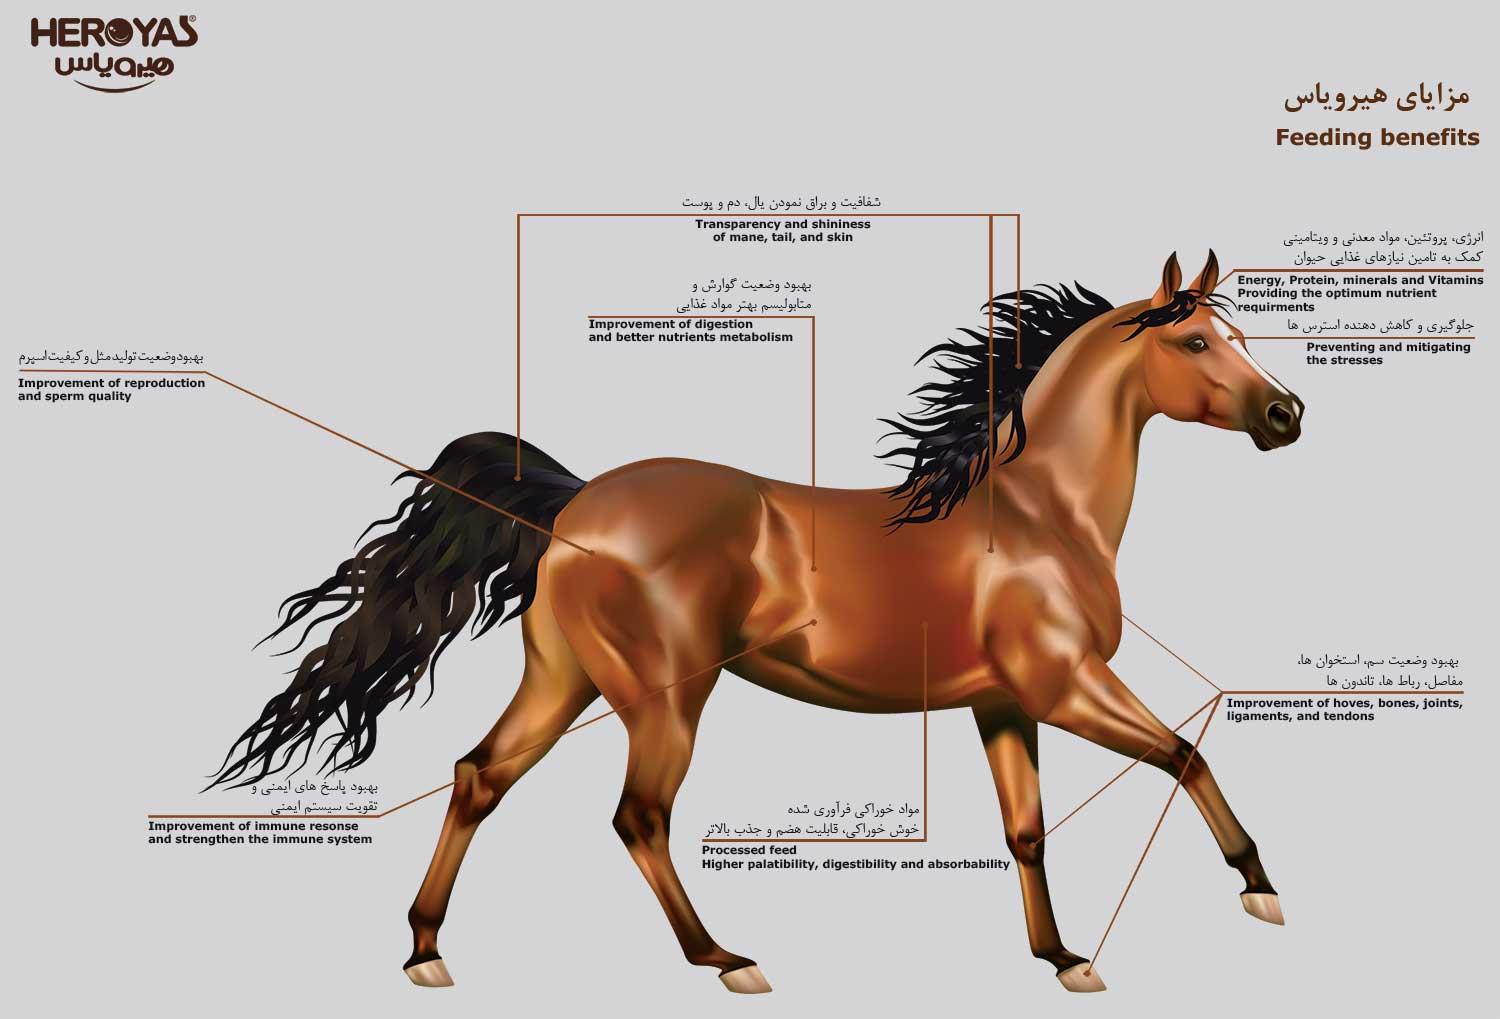 مزایای مکمل هیرویاس برای اسب